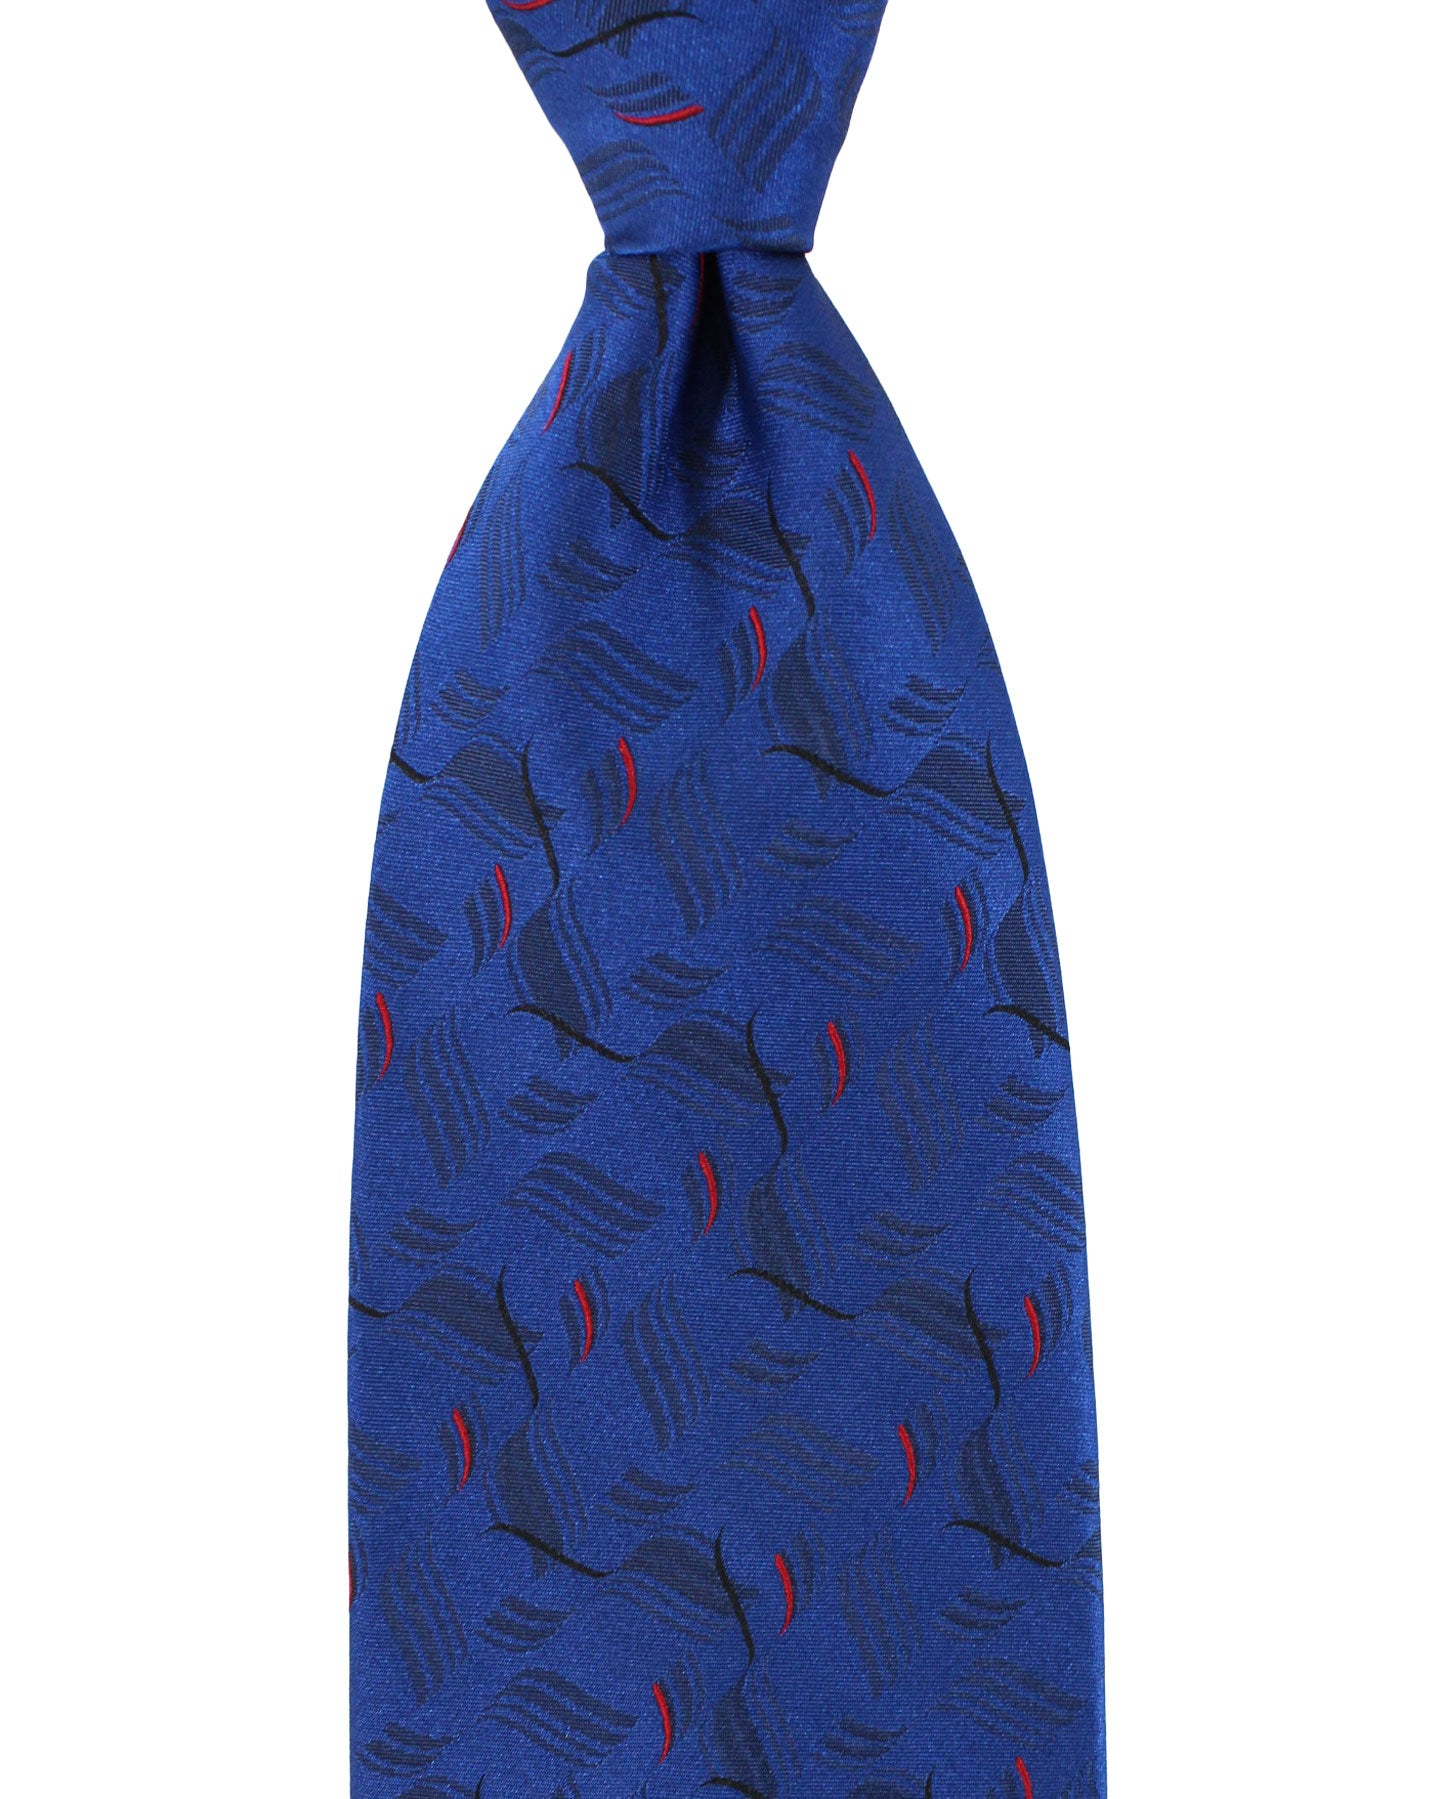 Zilli Silk Tie Royal Blue Red Design - Wide Necktie